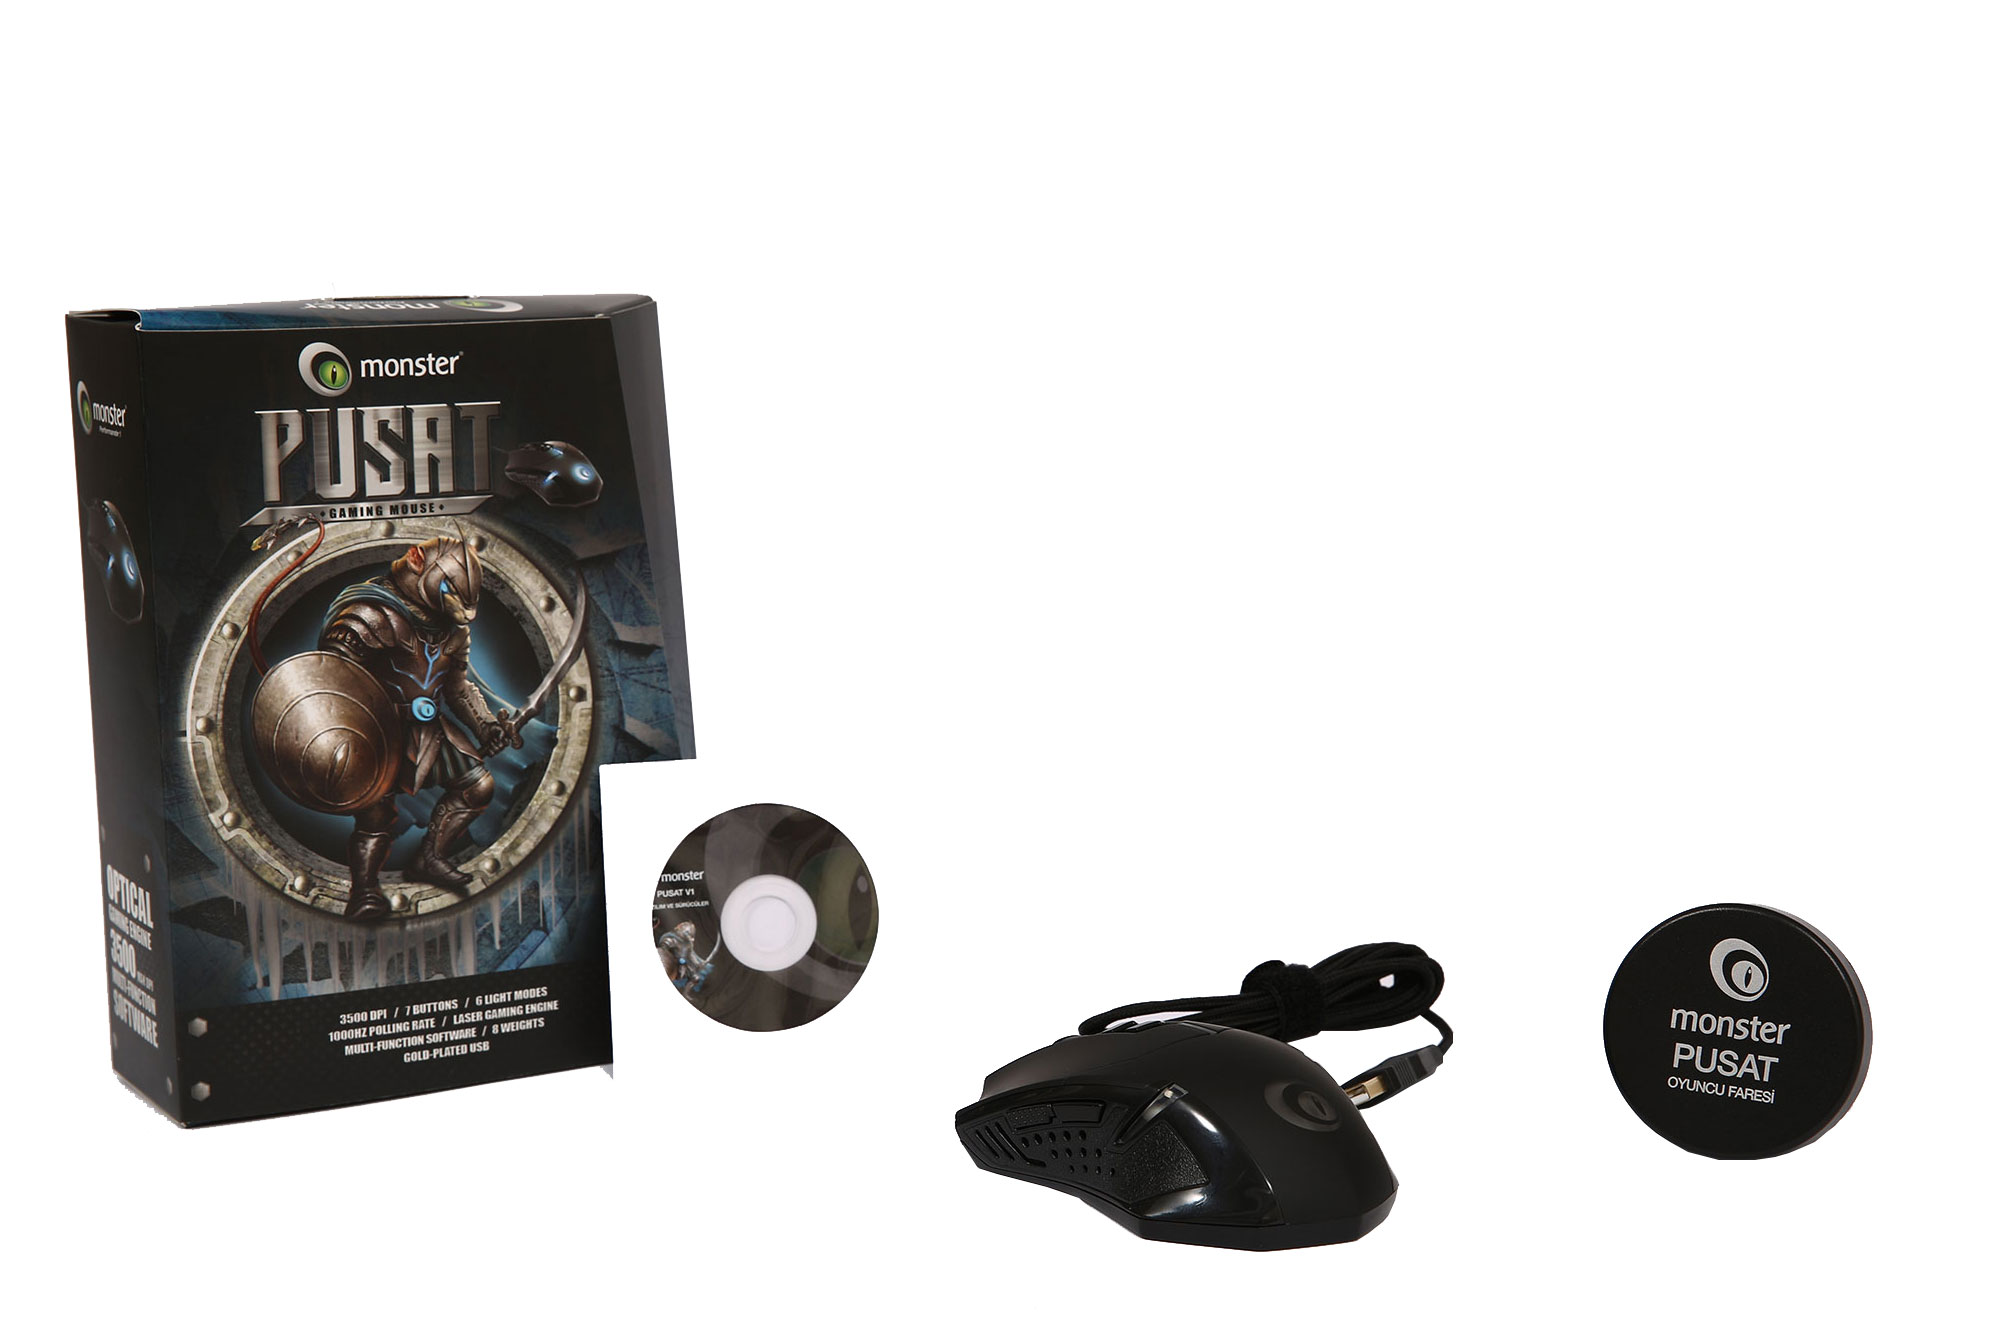 Monster Pusat V1 Gaming Mouse - Pusat Gaming Pad